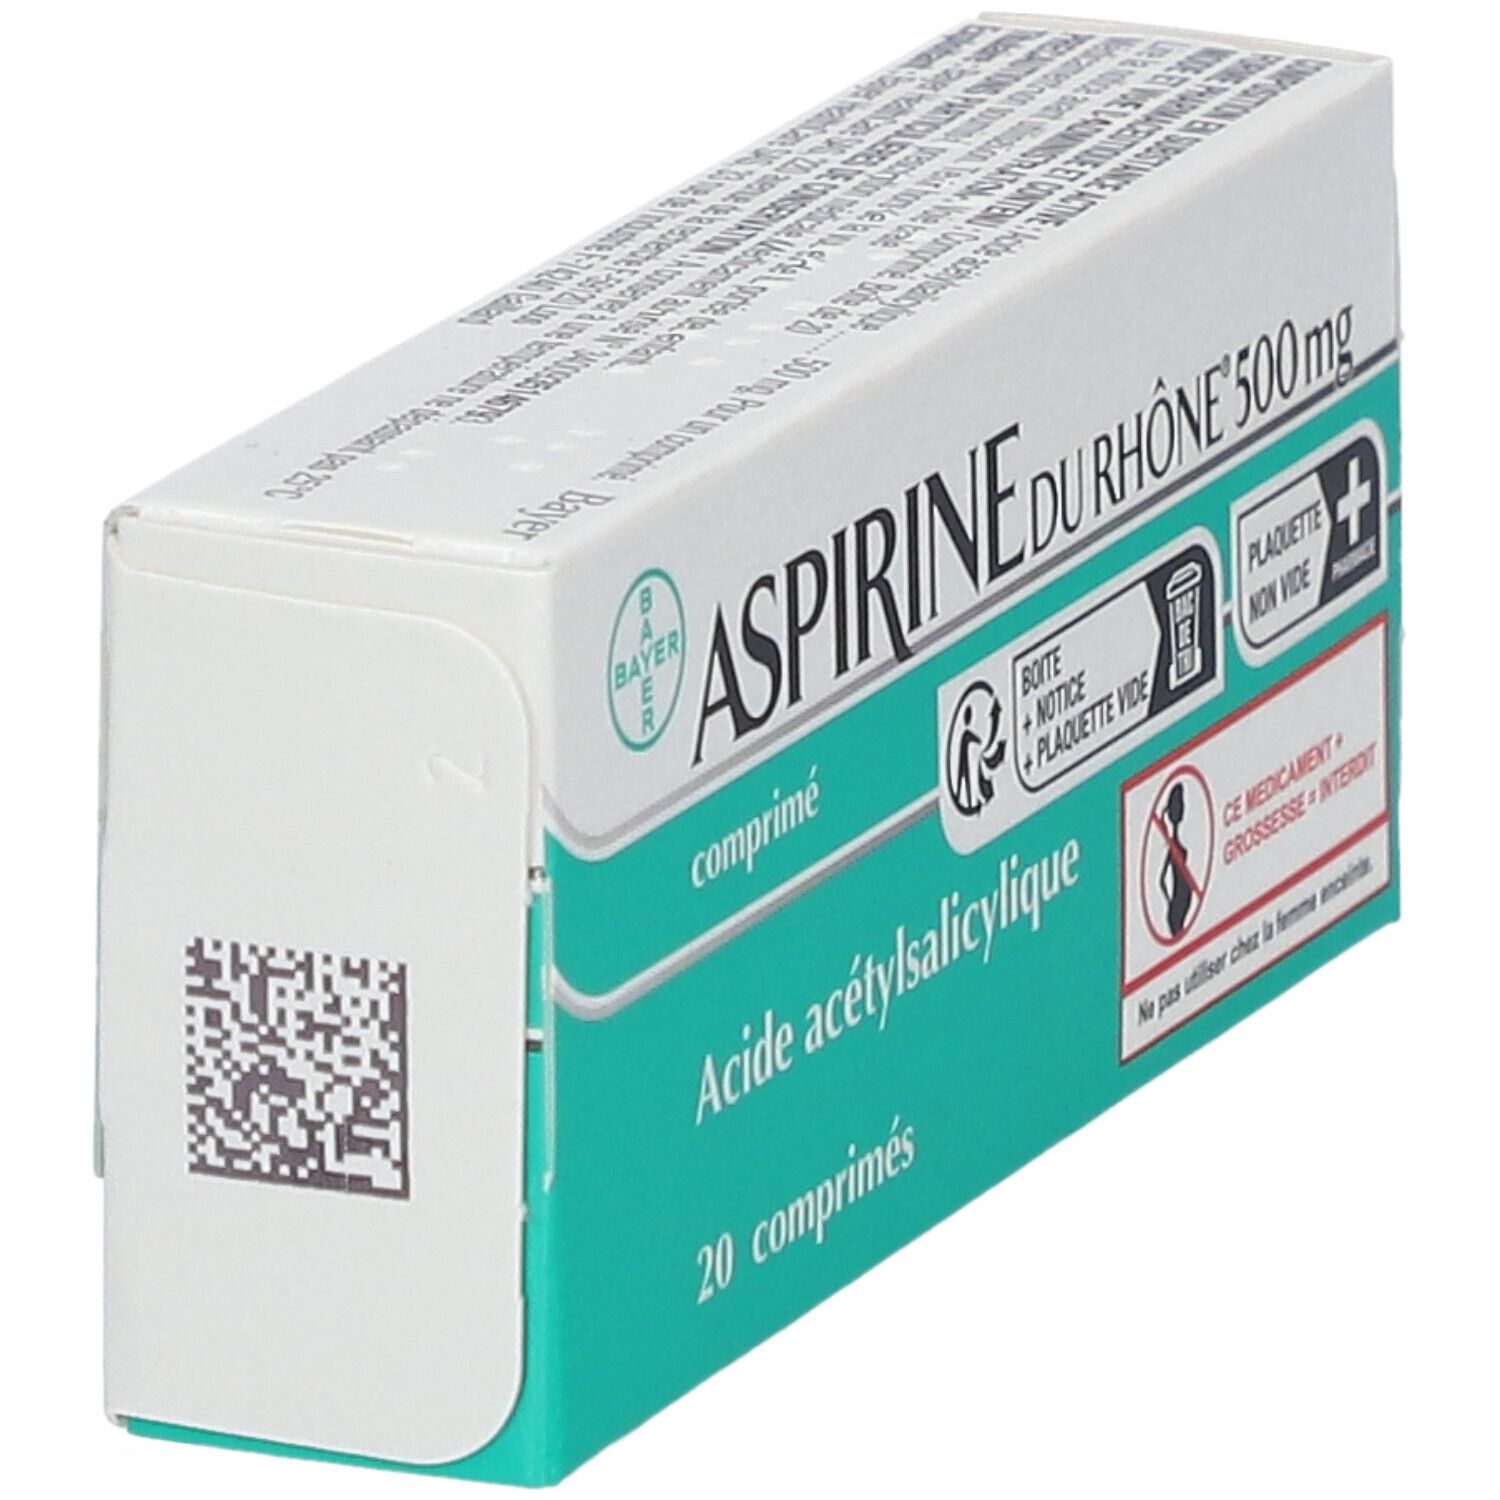 Aspirine du Rhône® 500 mg